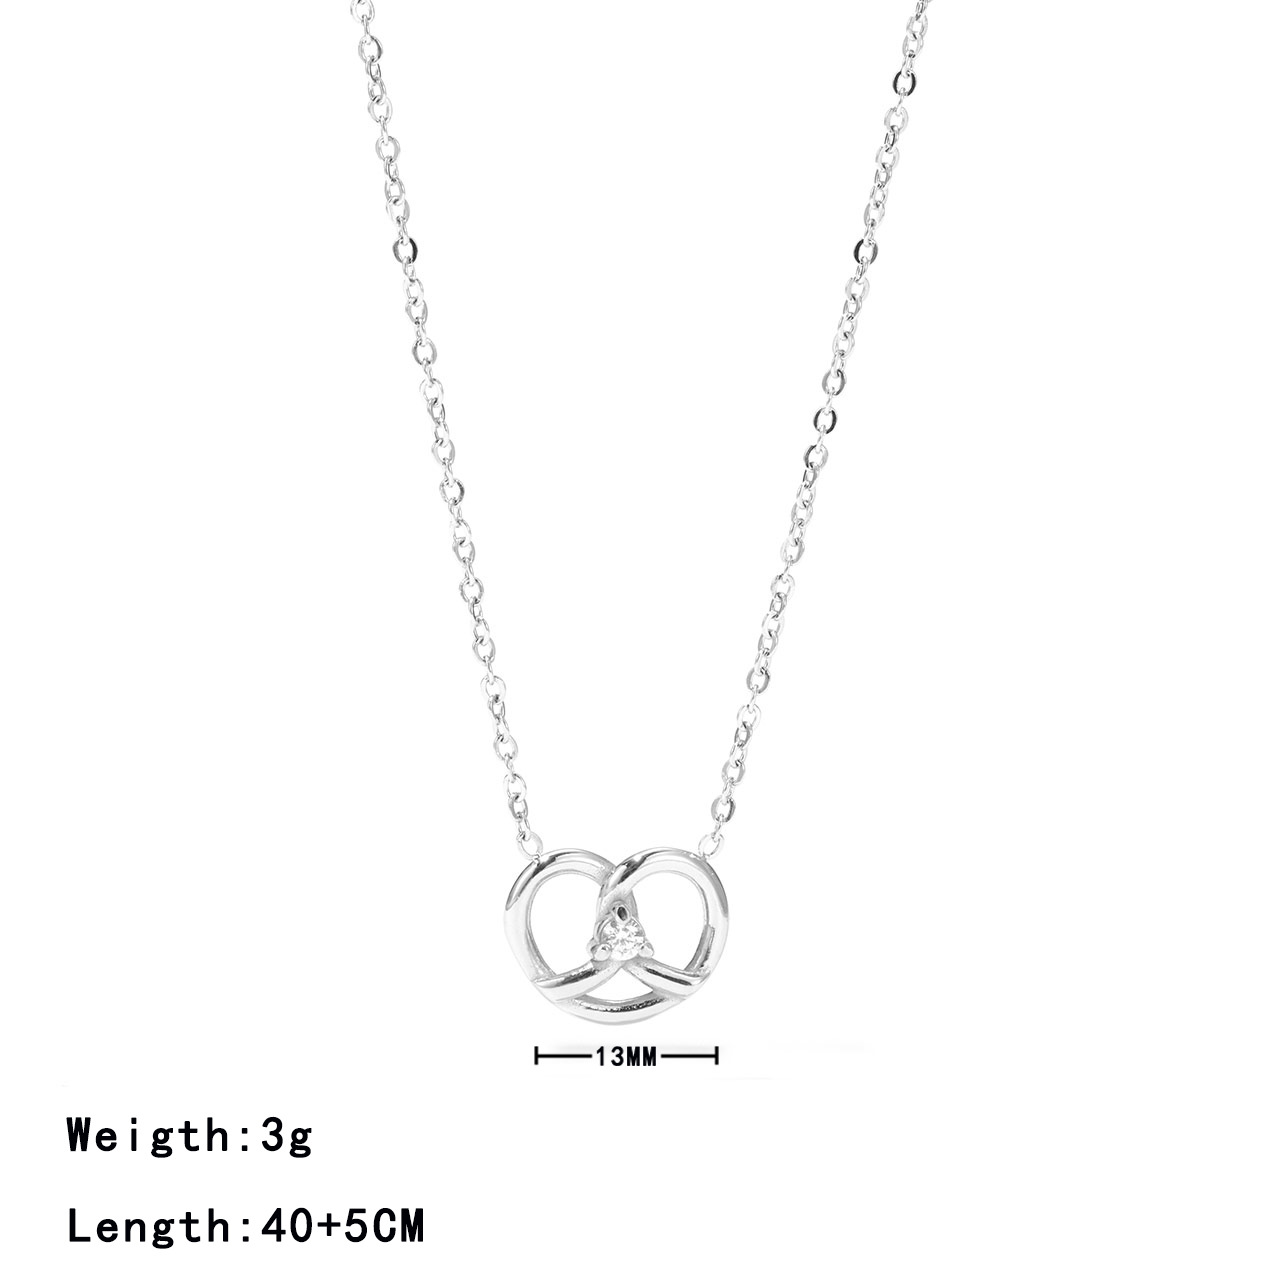 3:Platinum colour - Necklace